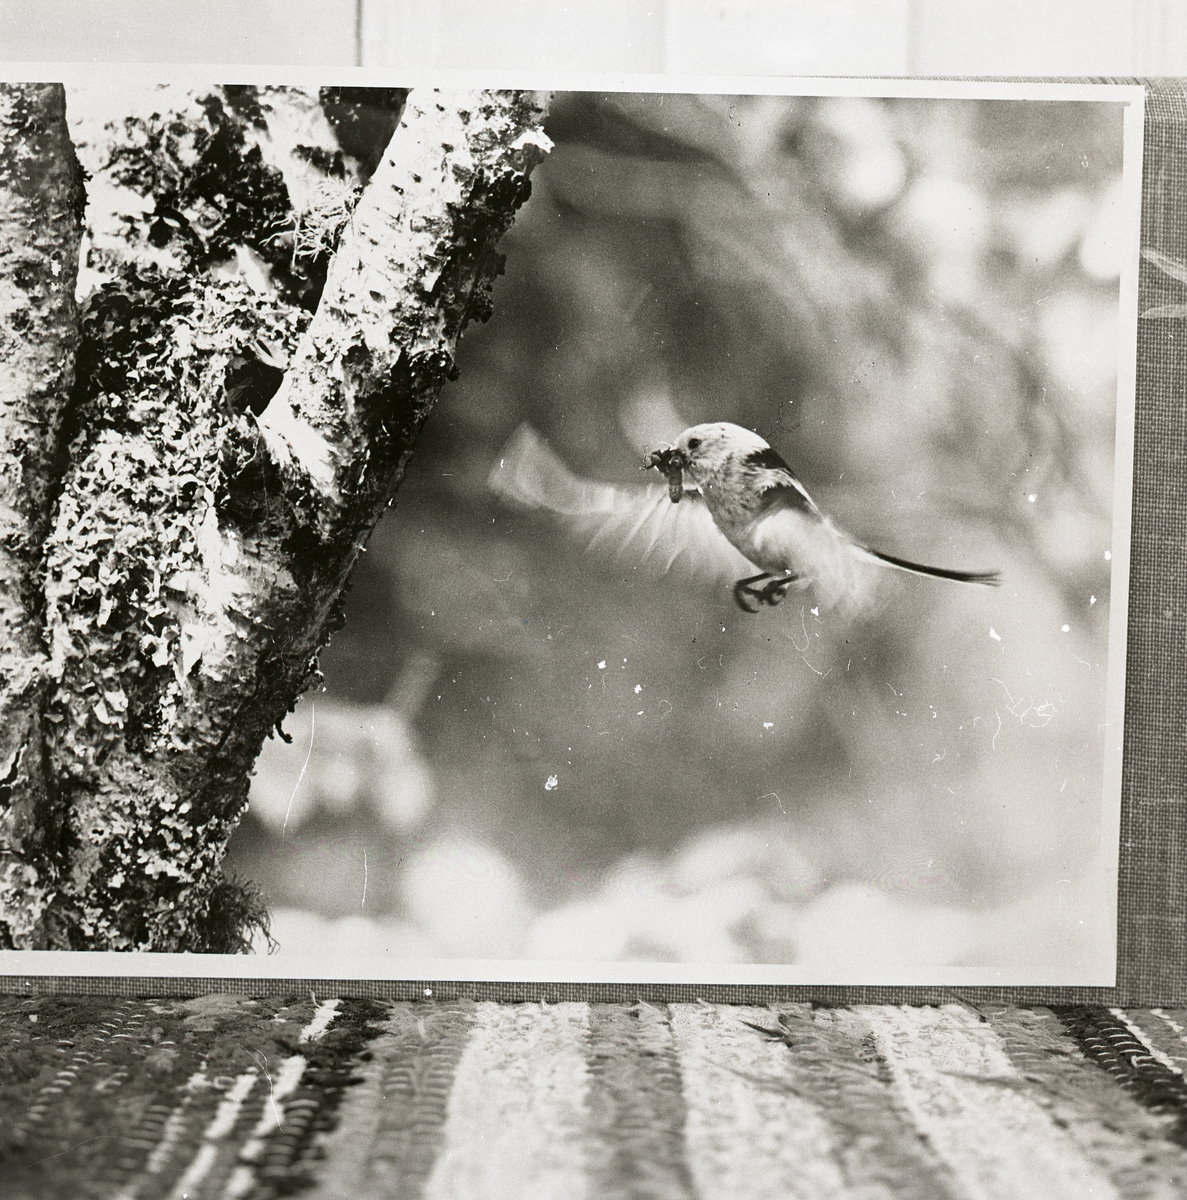 En flygande stjärtmes med byte i näbben intill ett träd.